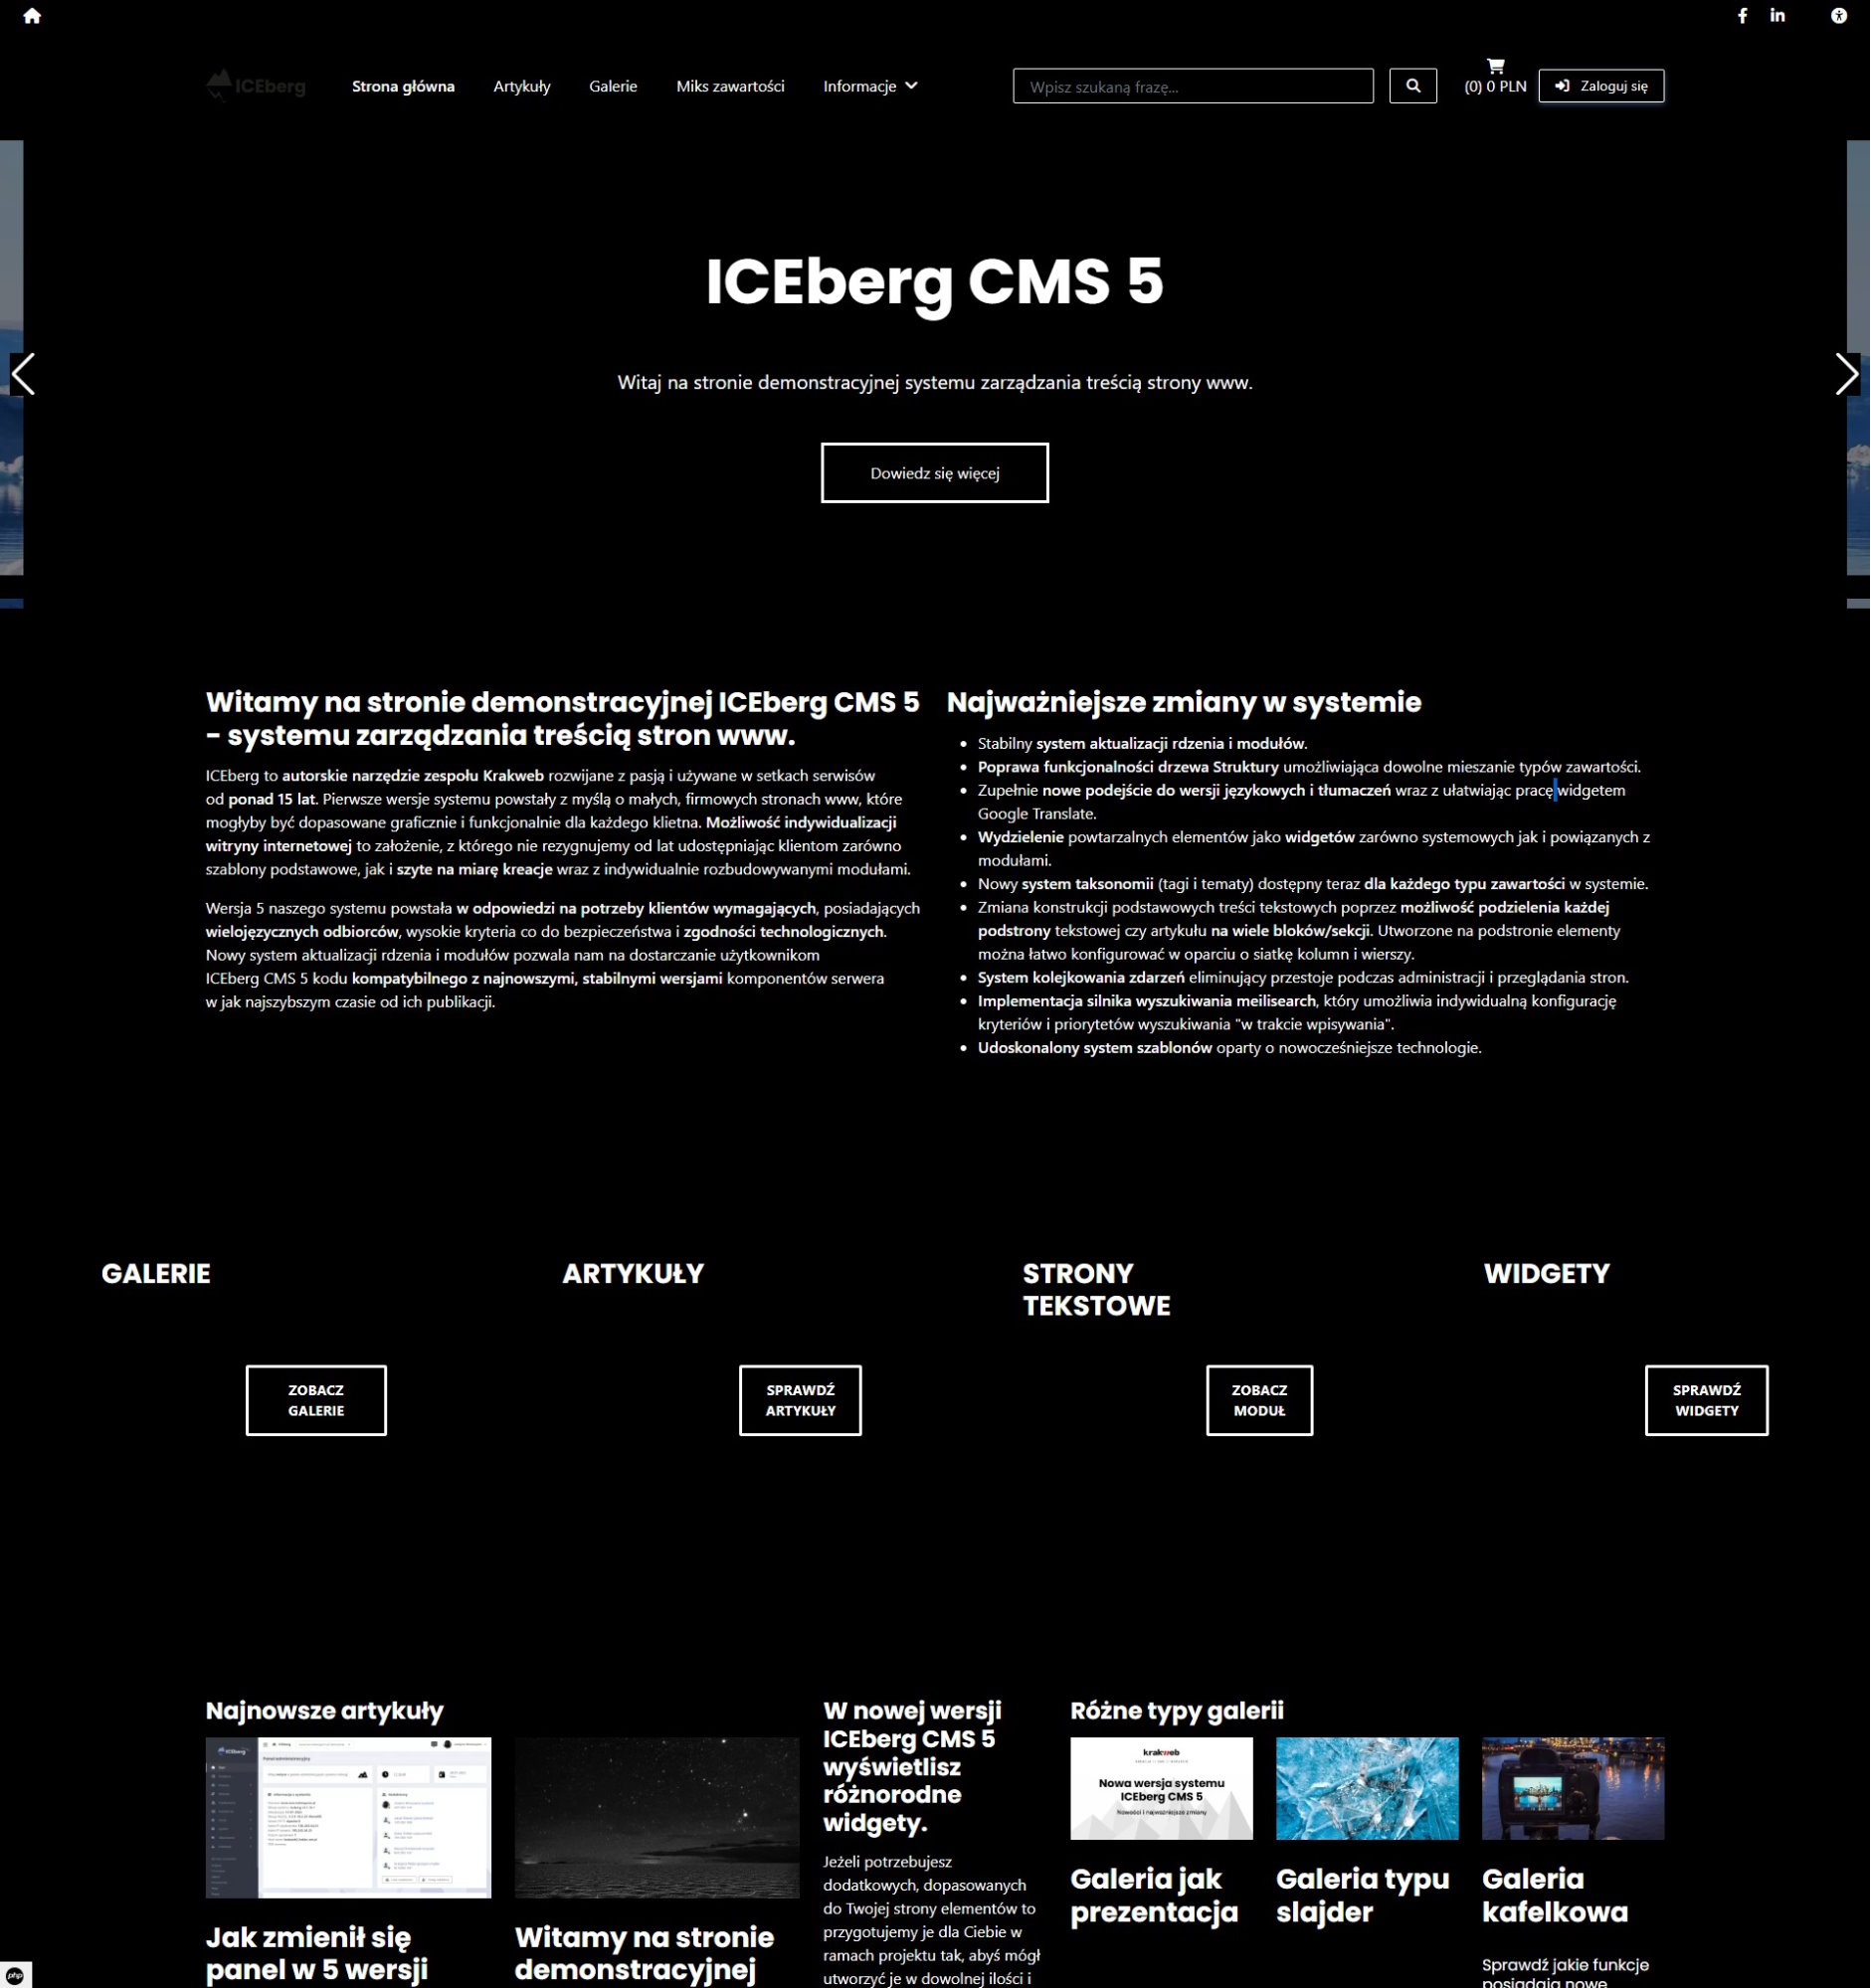 szablon główny systemu CMS ICEberg CMS 5 po włączeniu trybu ciemnego w widgecie WCAG